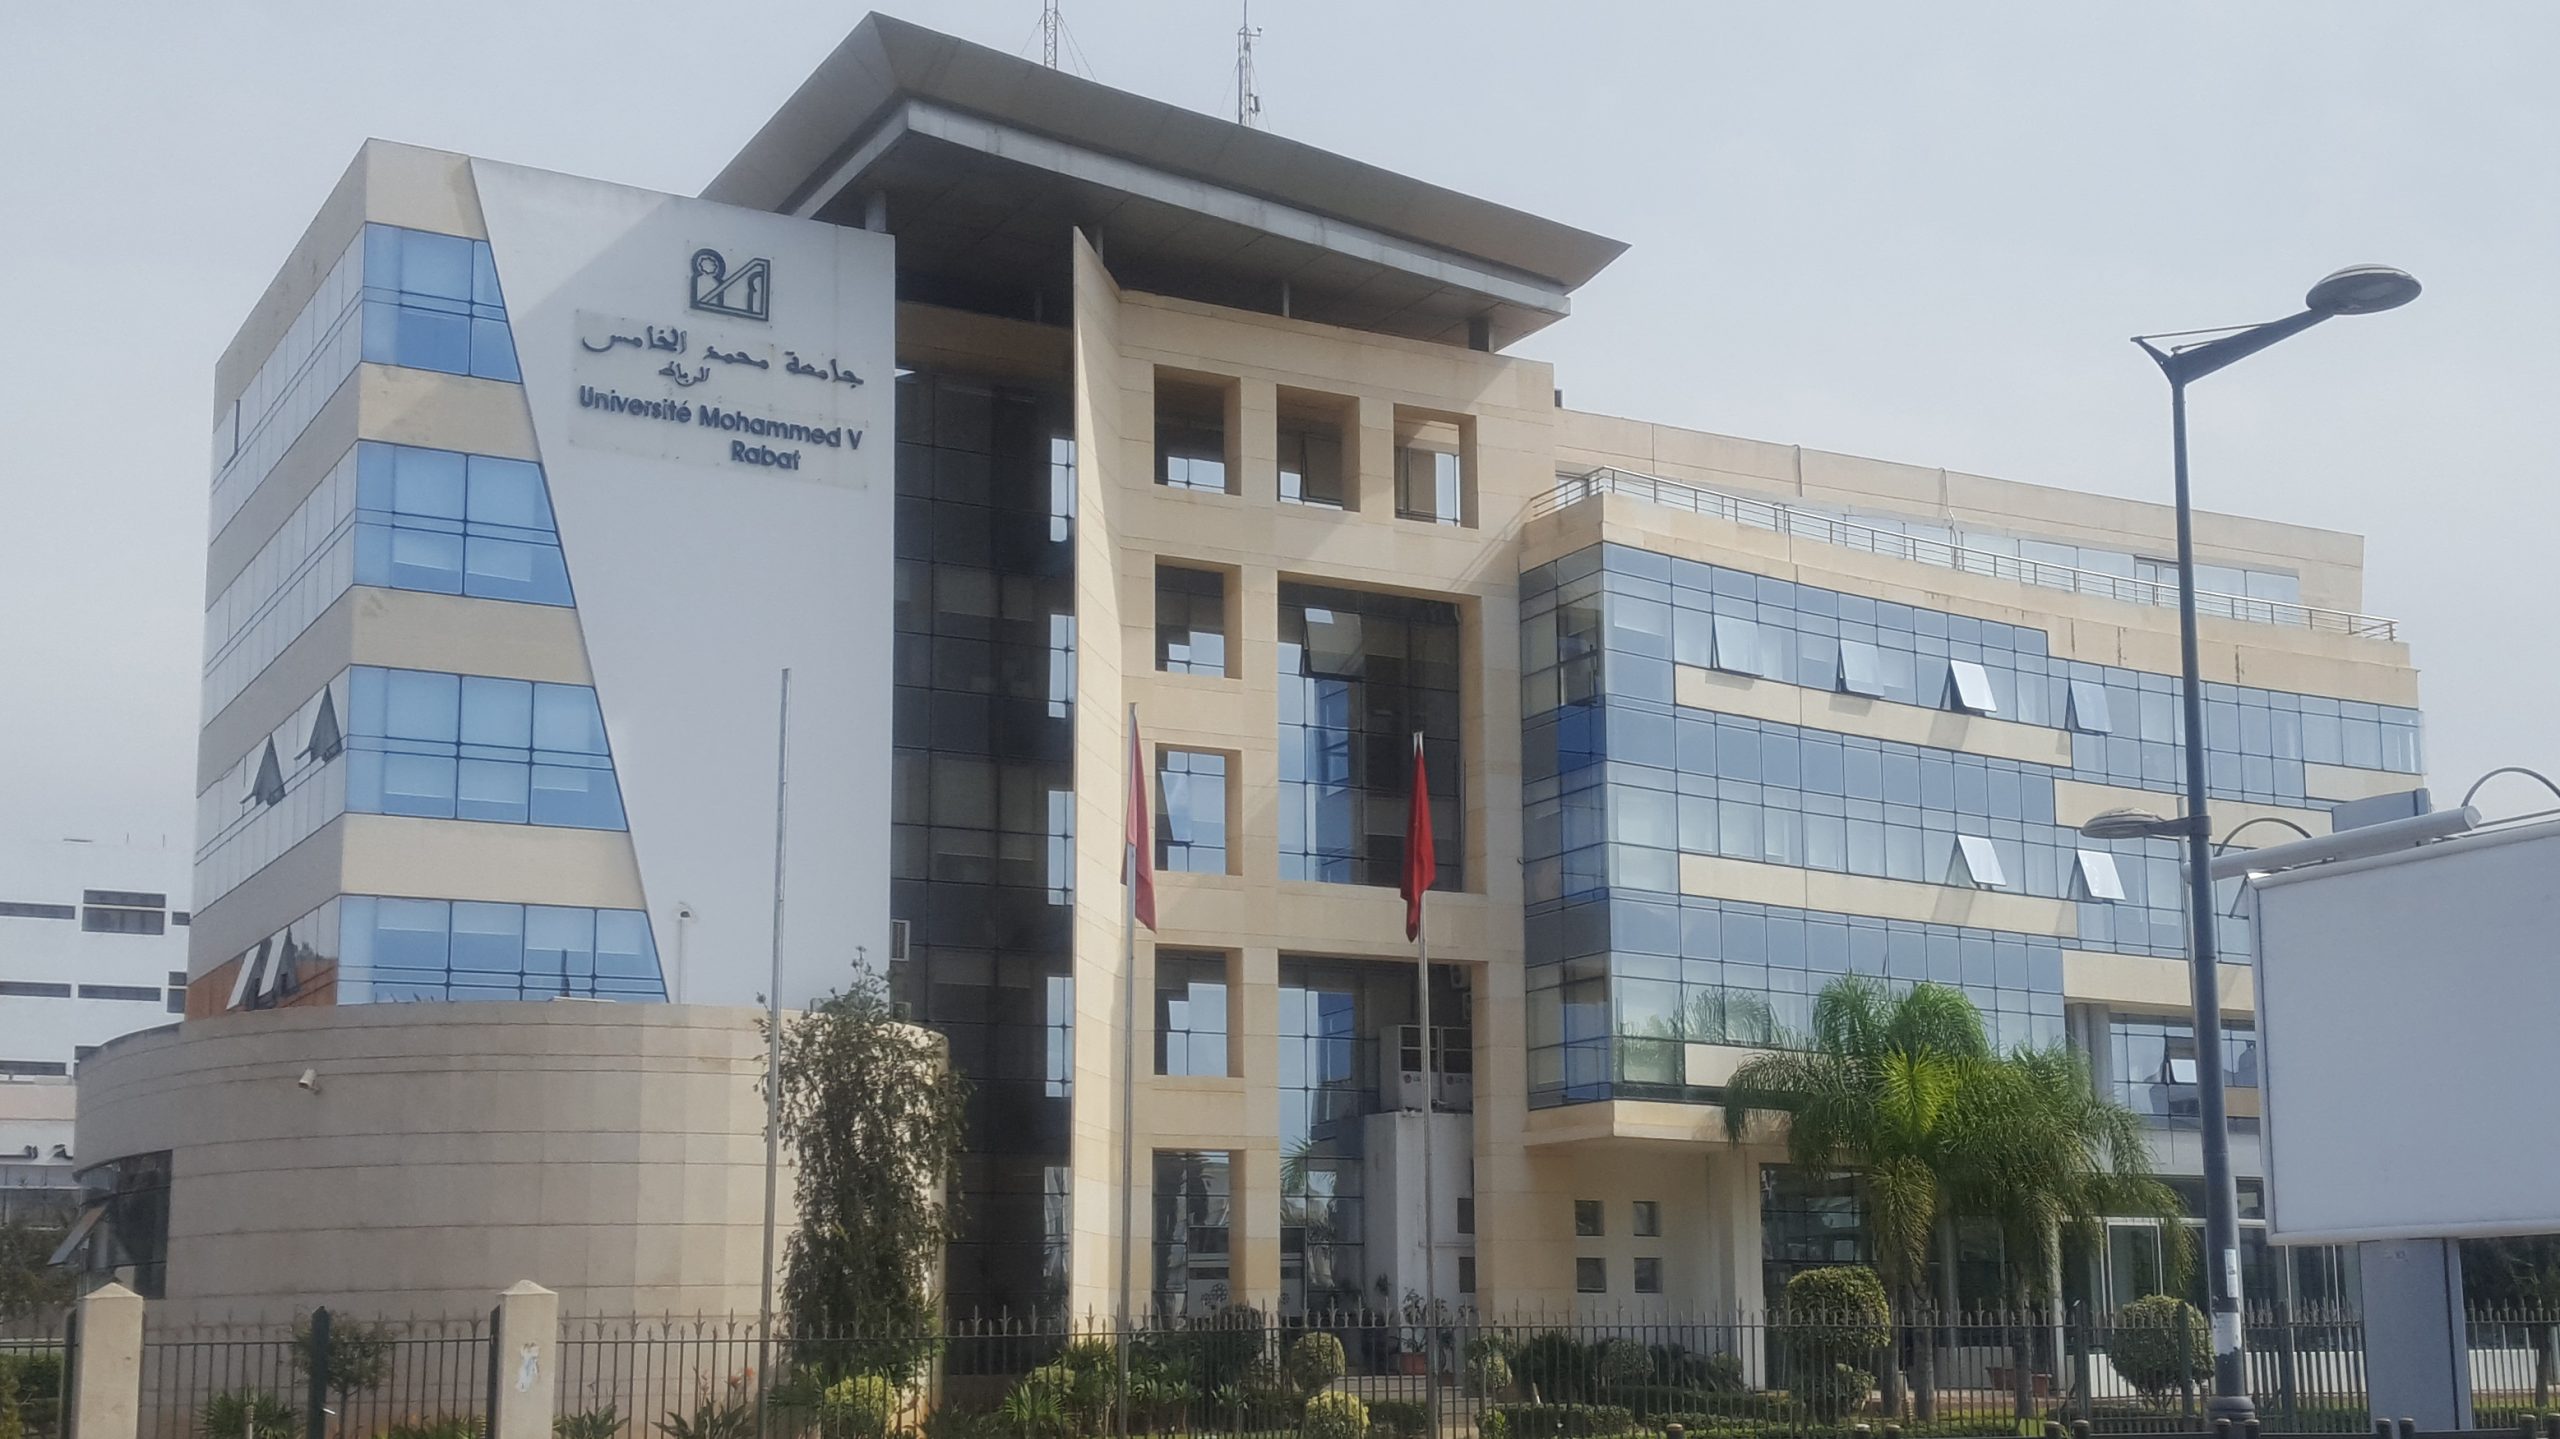 Une convention de coopération académique, scientifique et culturelle a été signée entre l’Université Mohammed V de Rabat et l’Université espagnole Complutense de Madrid